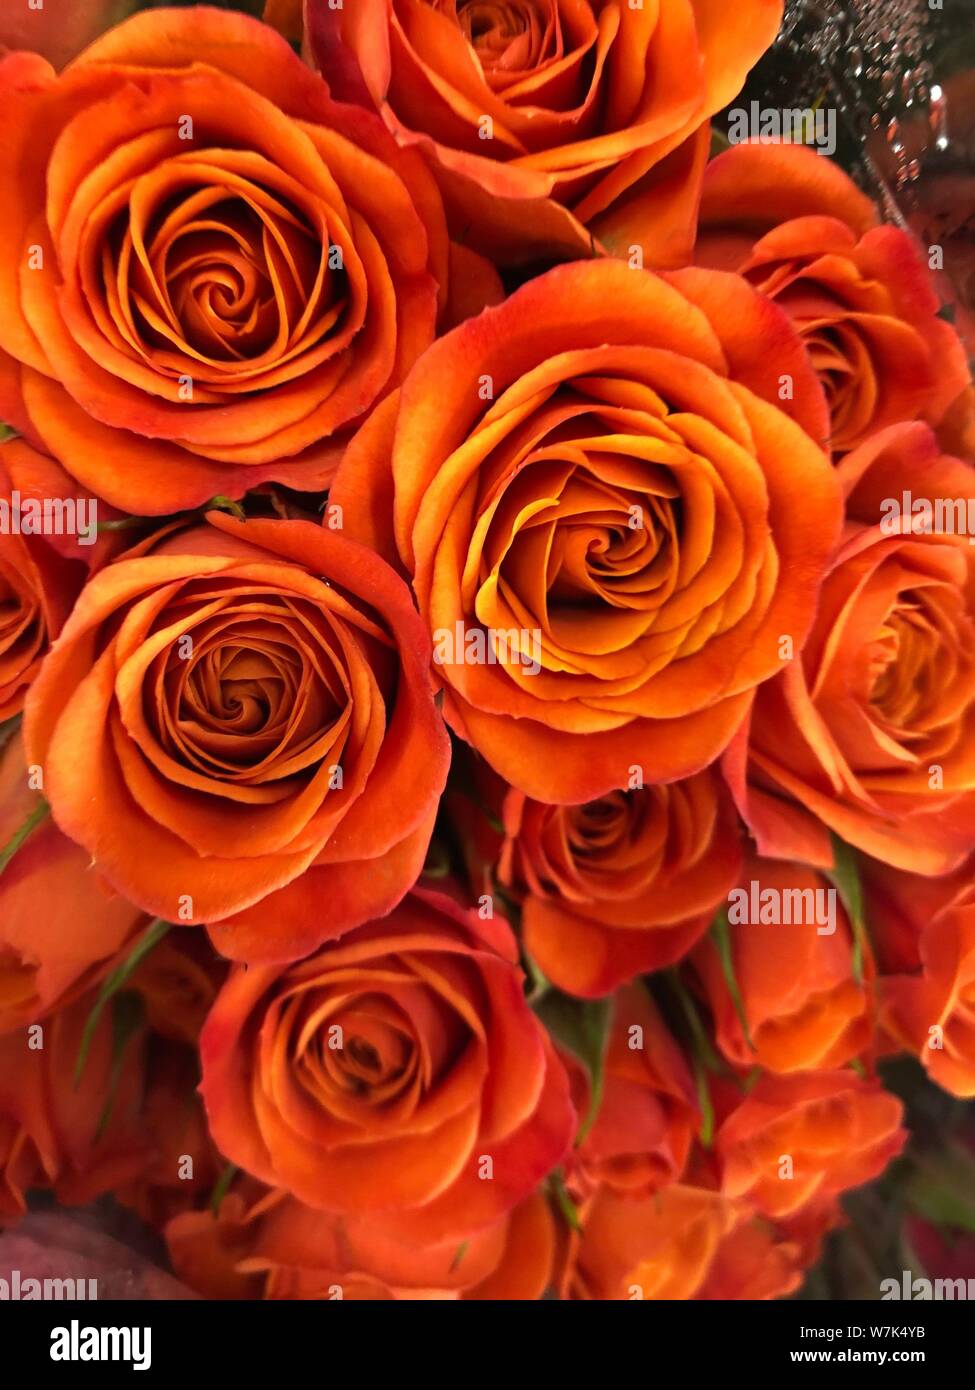 Roses Orange fond beau papier peint fleurs Image de récolte pour la conception Banque D'Images